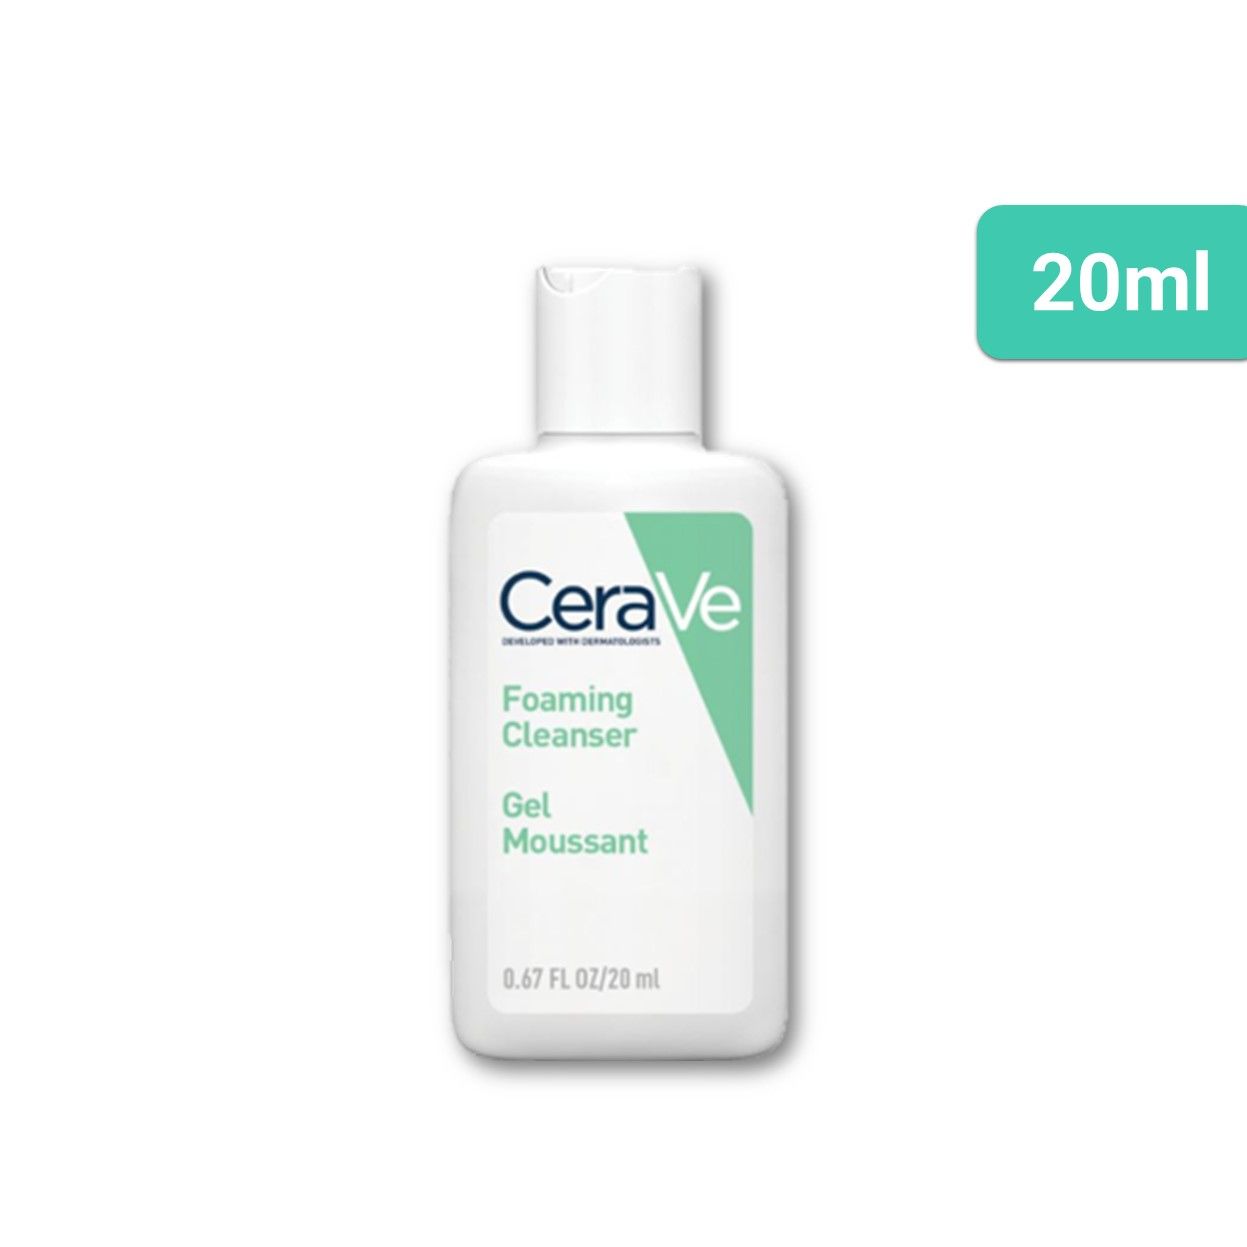  CeraVe - Sữa rửa mặt Foaming - 20ml - T15 